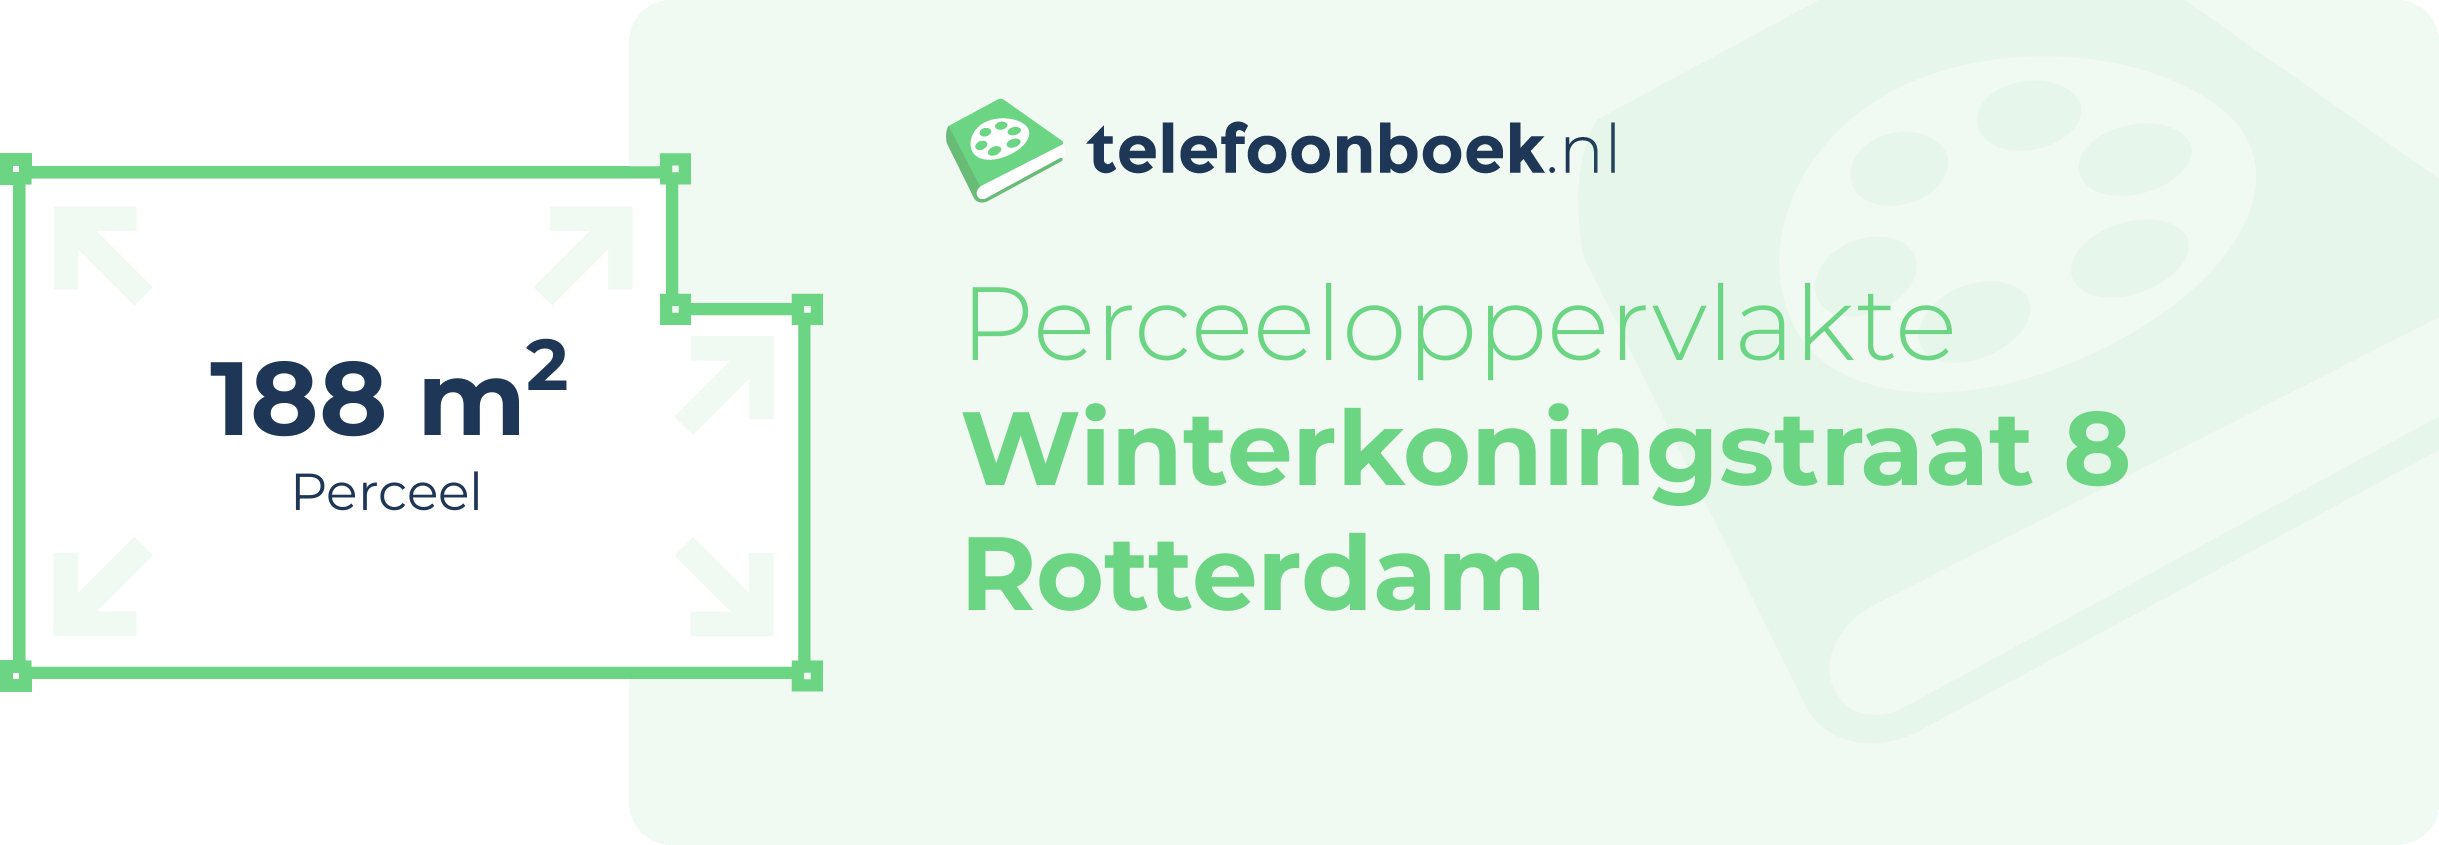 Perceeloppervlakte Winterkoningstraat 8 Rotterdam